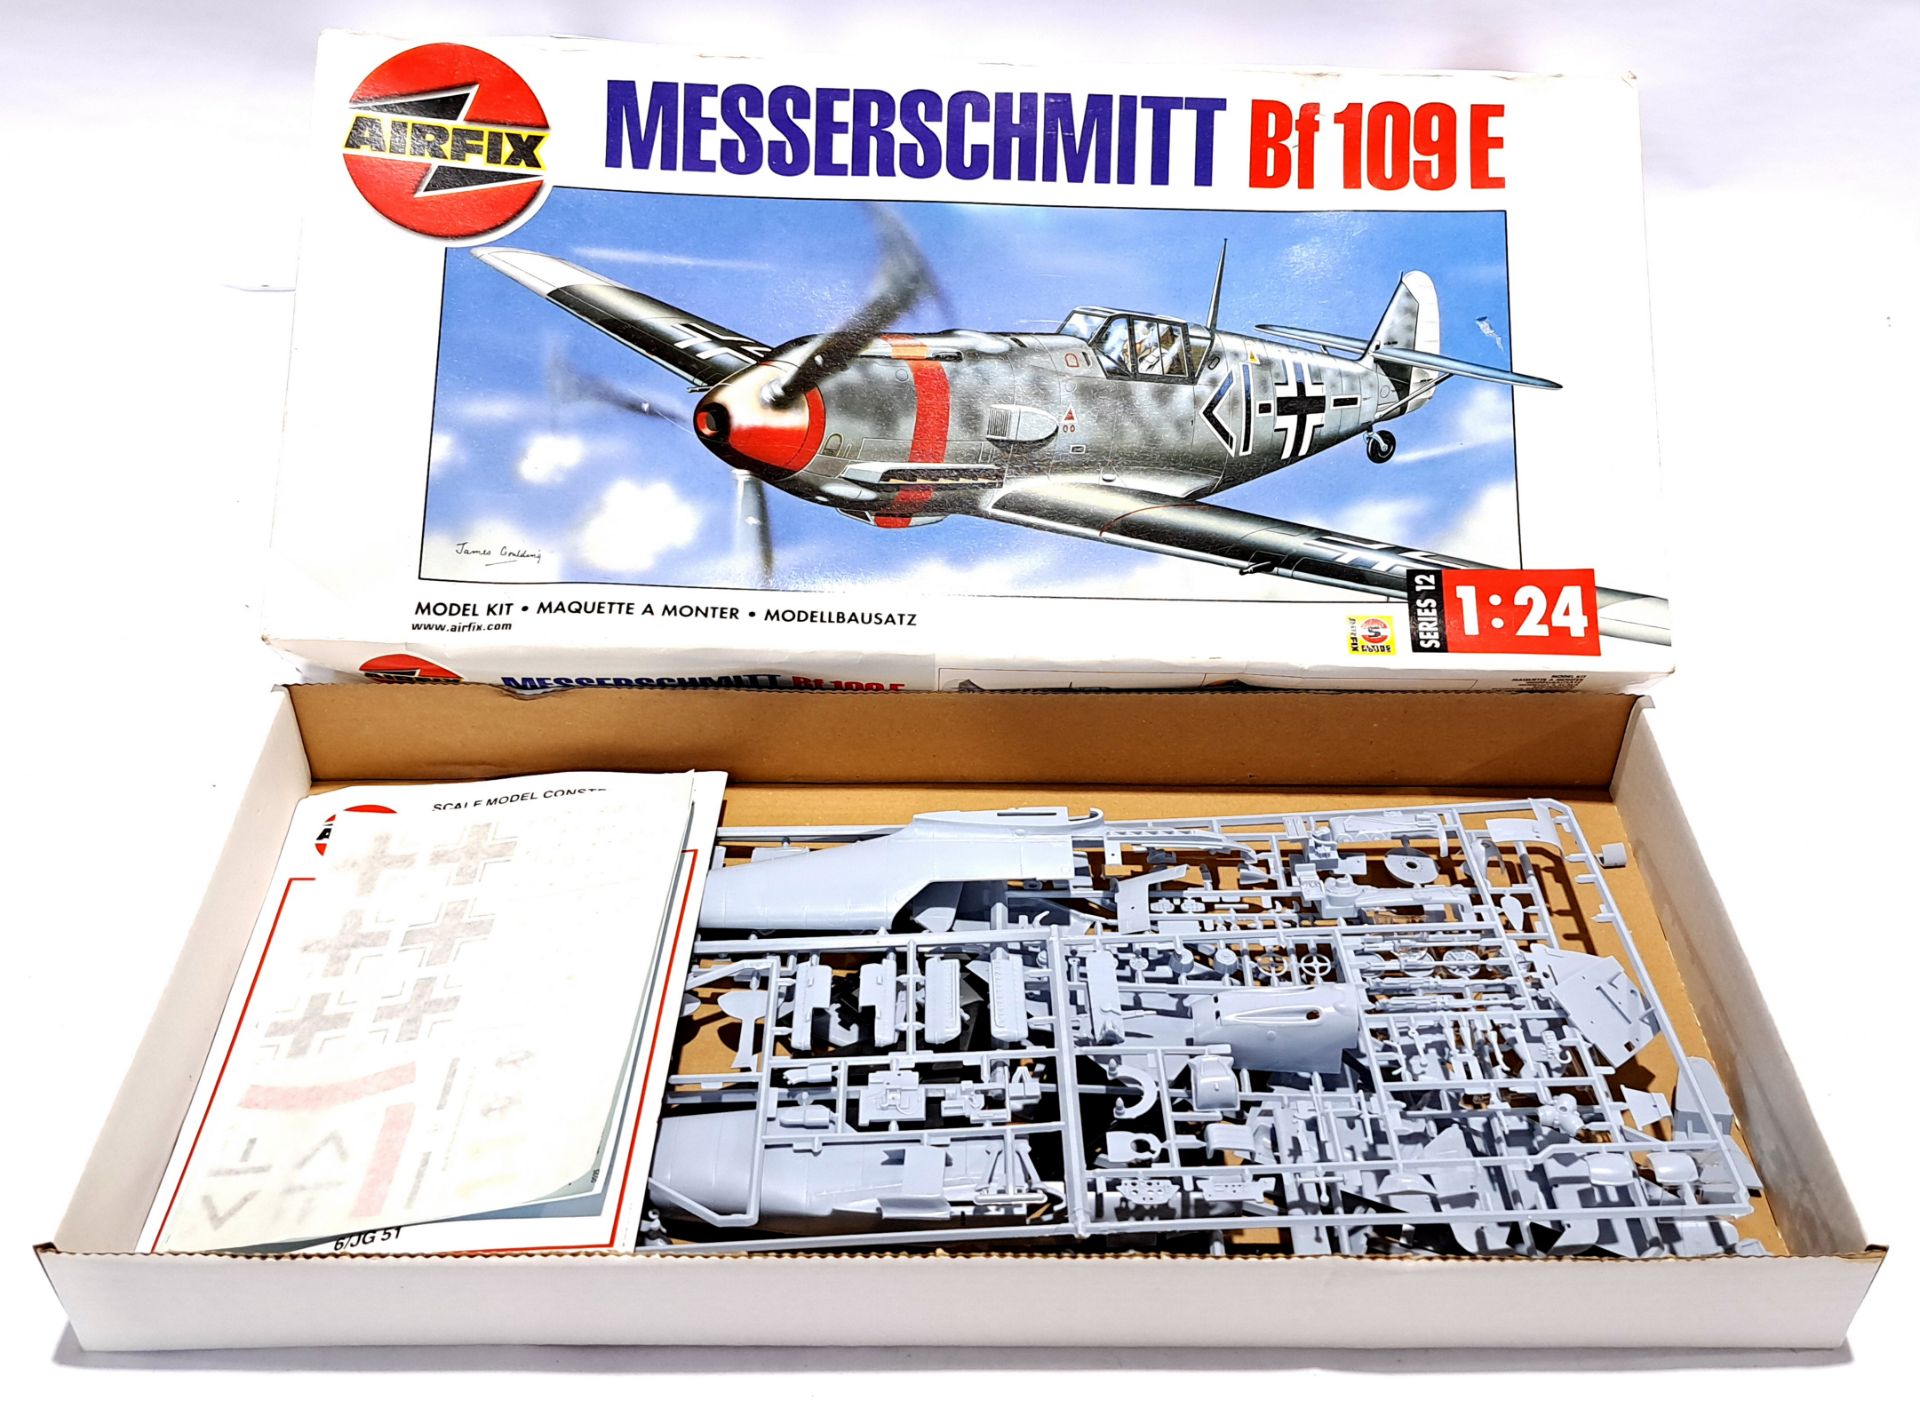 Airfix 12002 1:24 scale Series 12 Messerschmitt Bf 109 E unmade plastic model kit